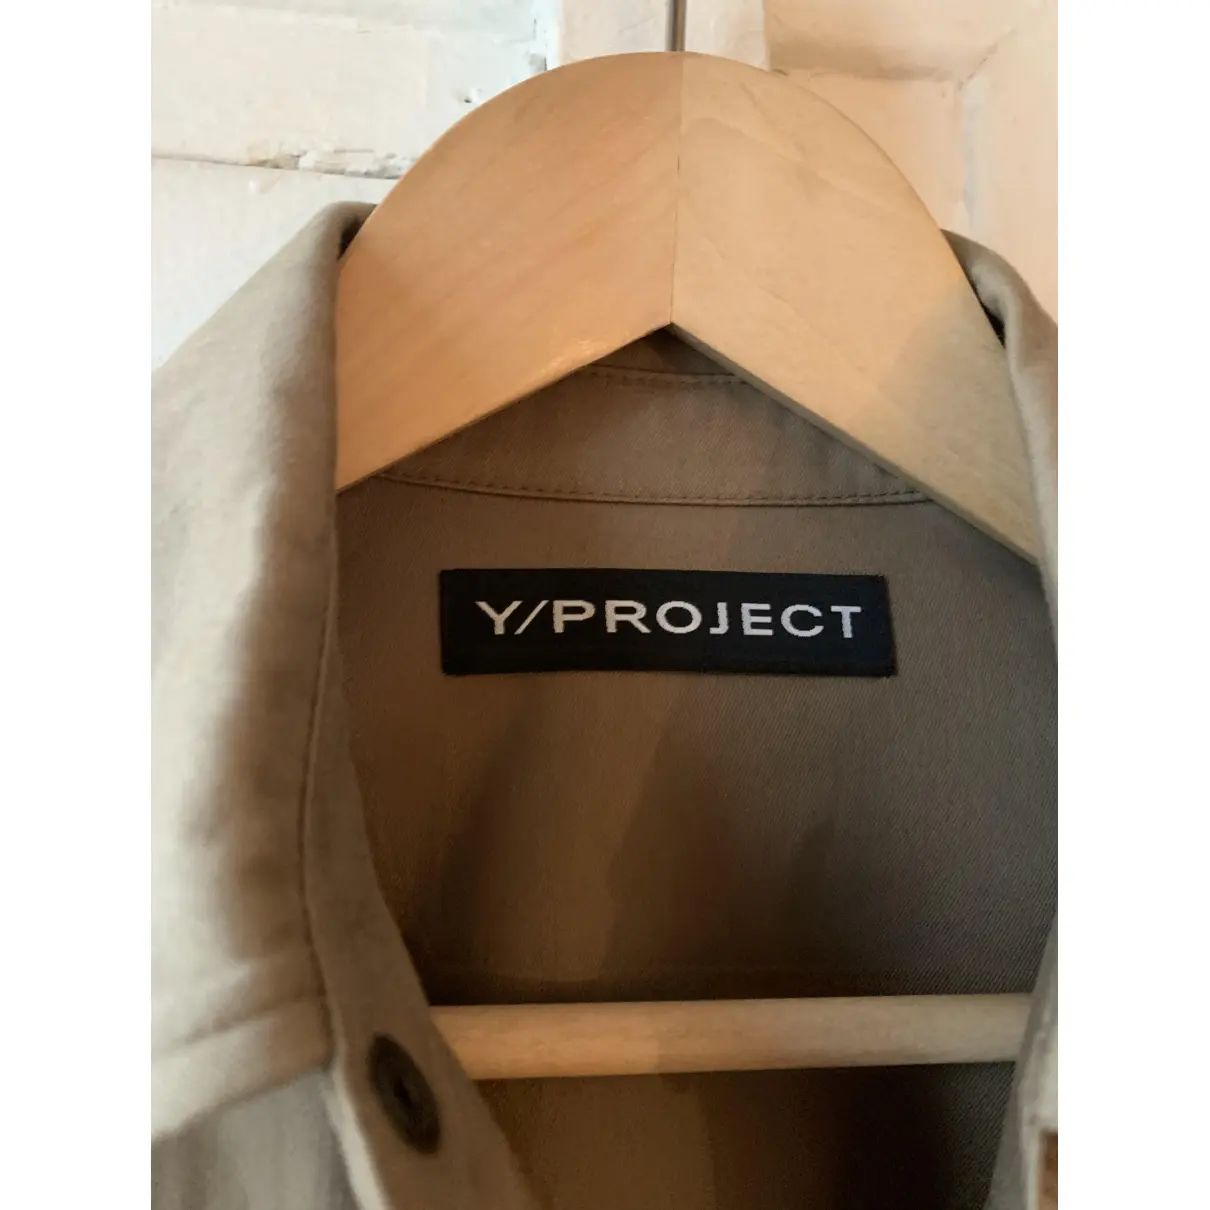 Buy Y/Project Top online